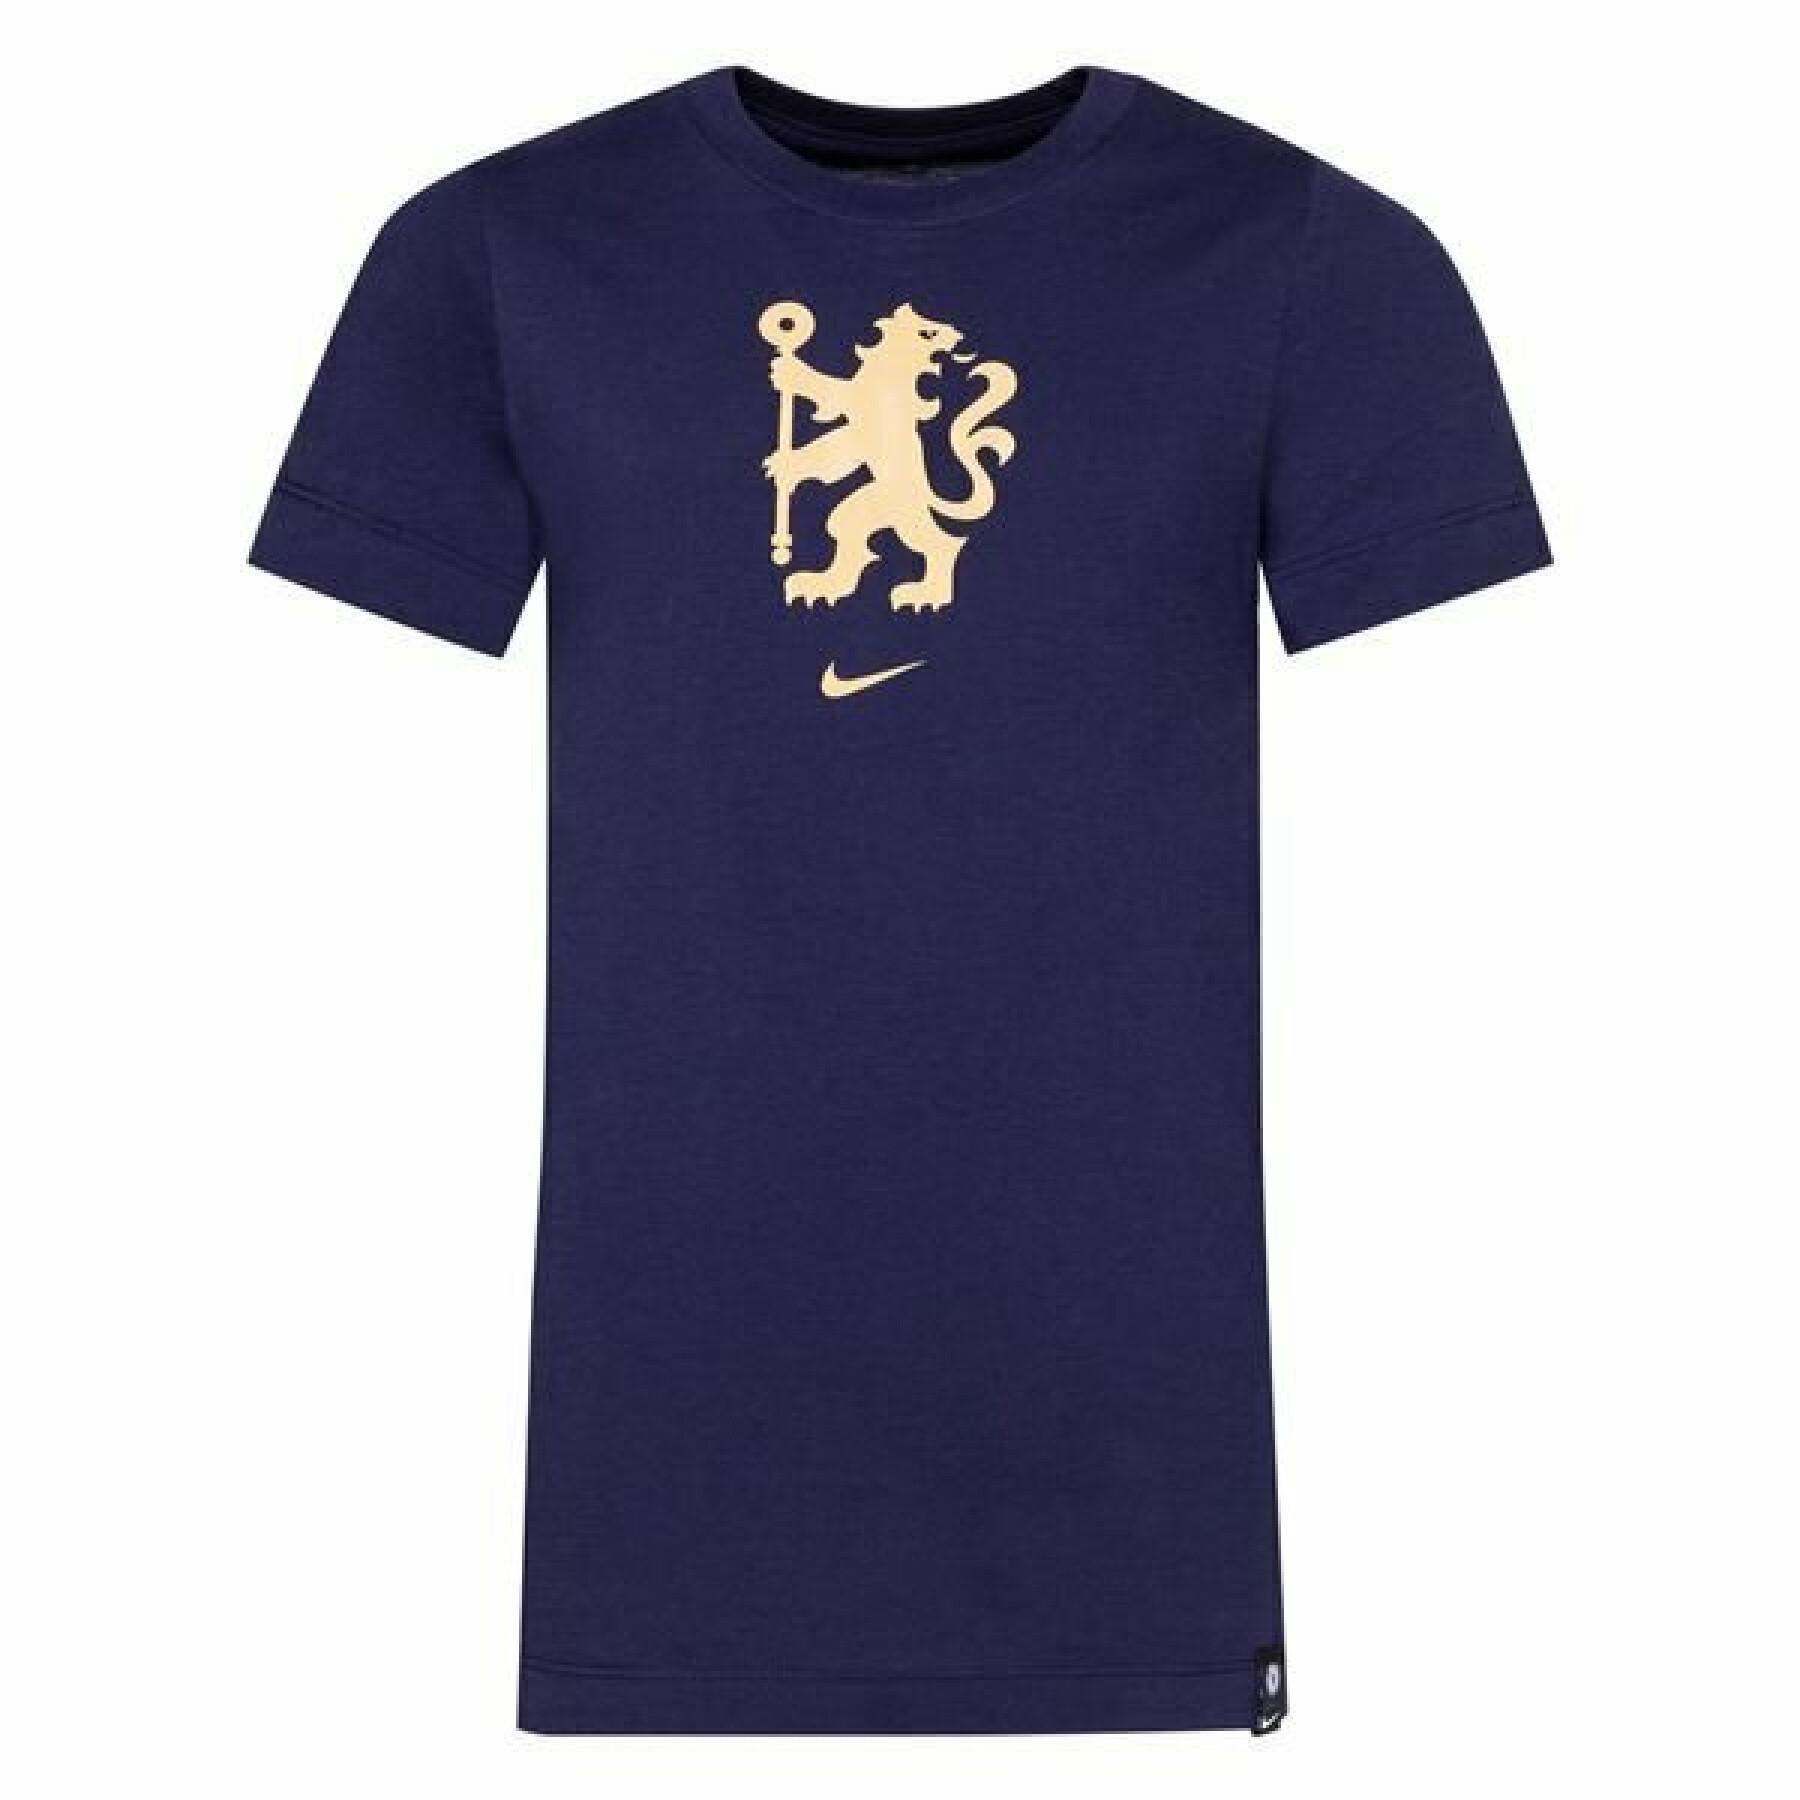 Kinder T-Shirt Chelsea 2021/22